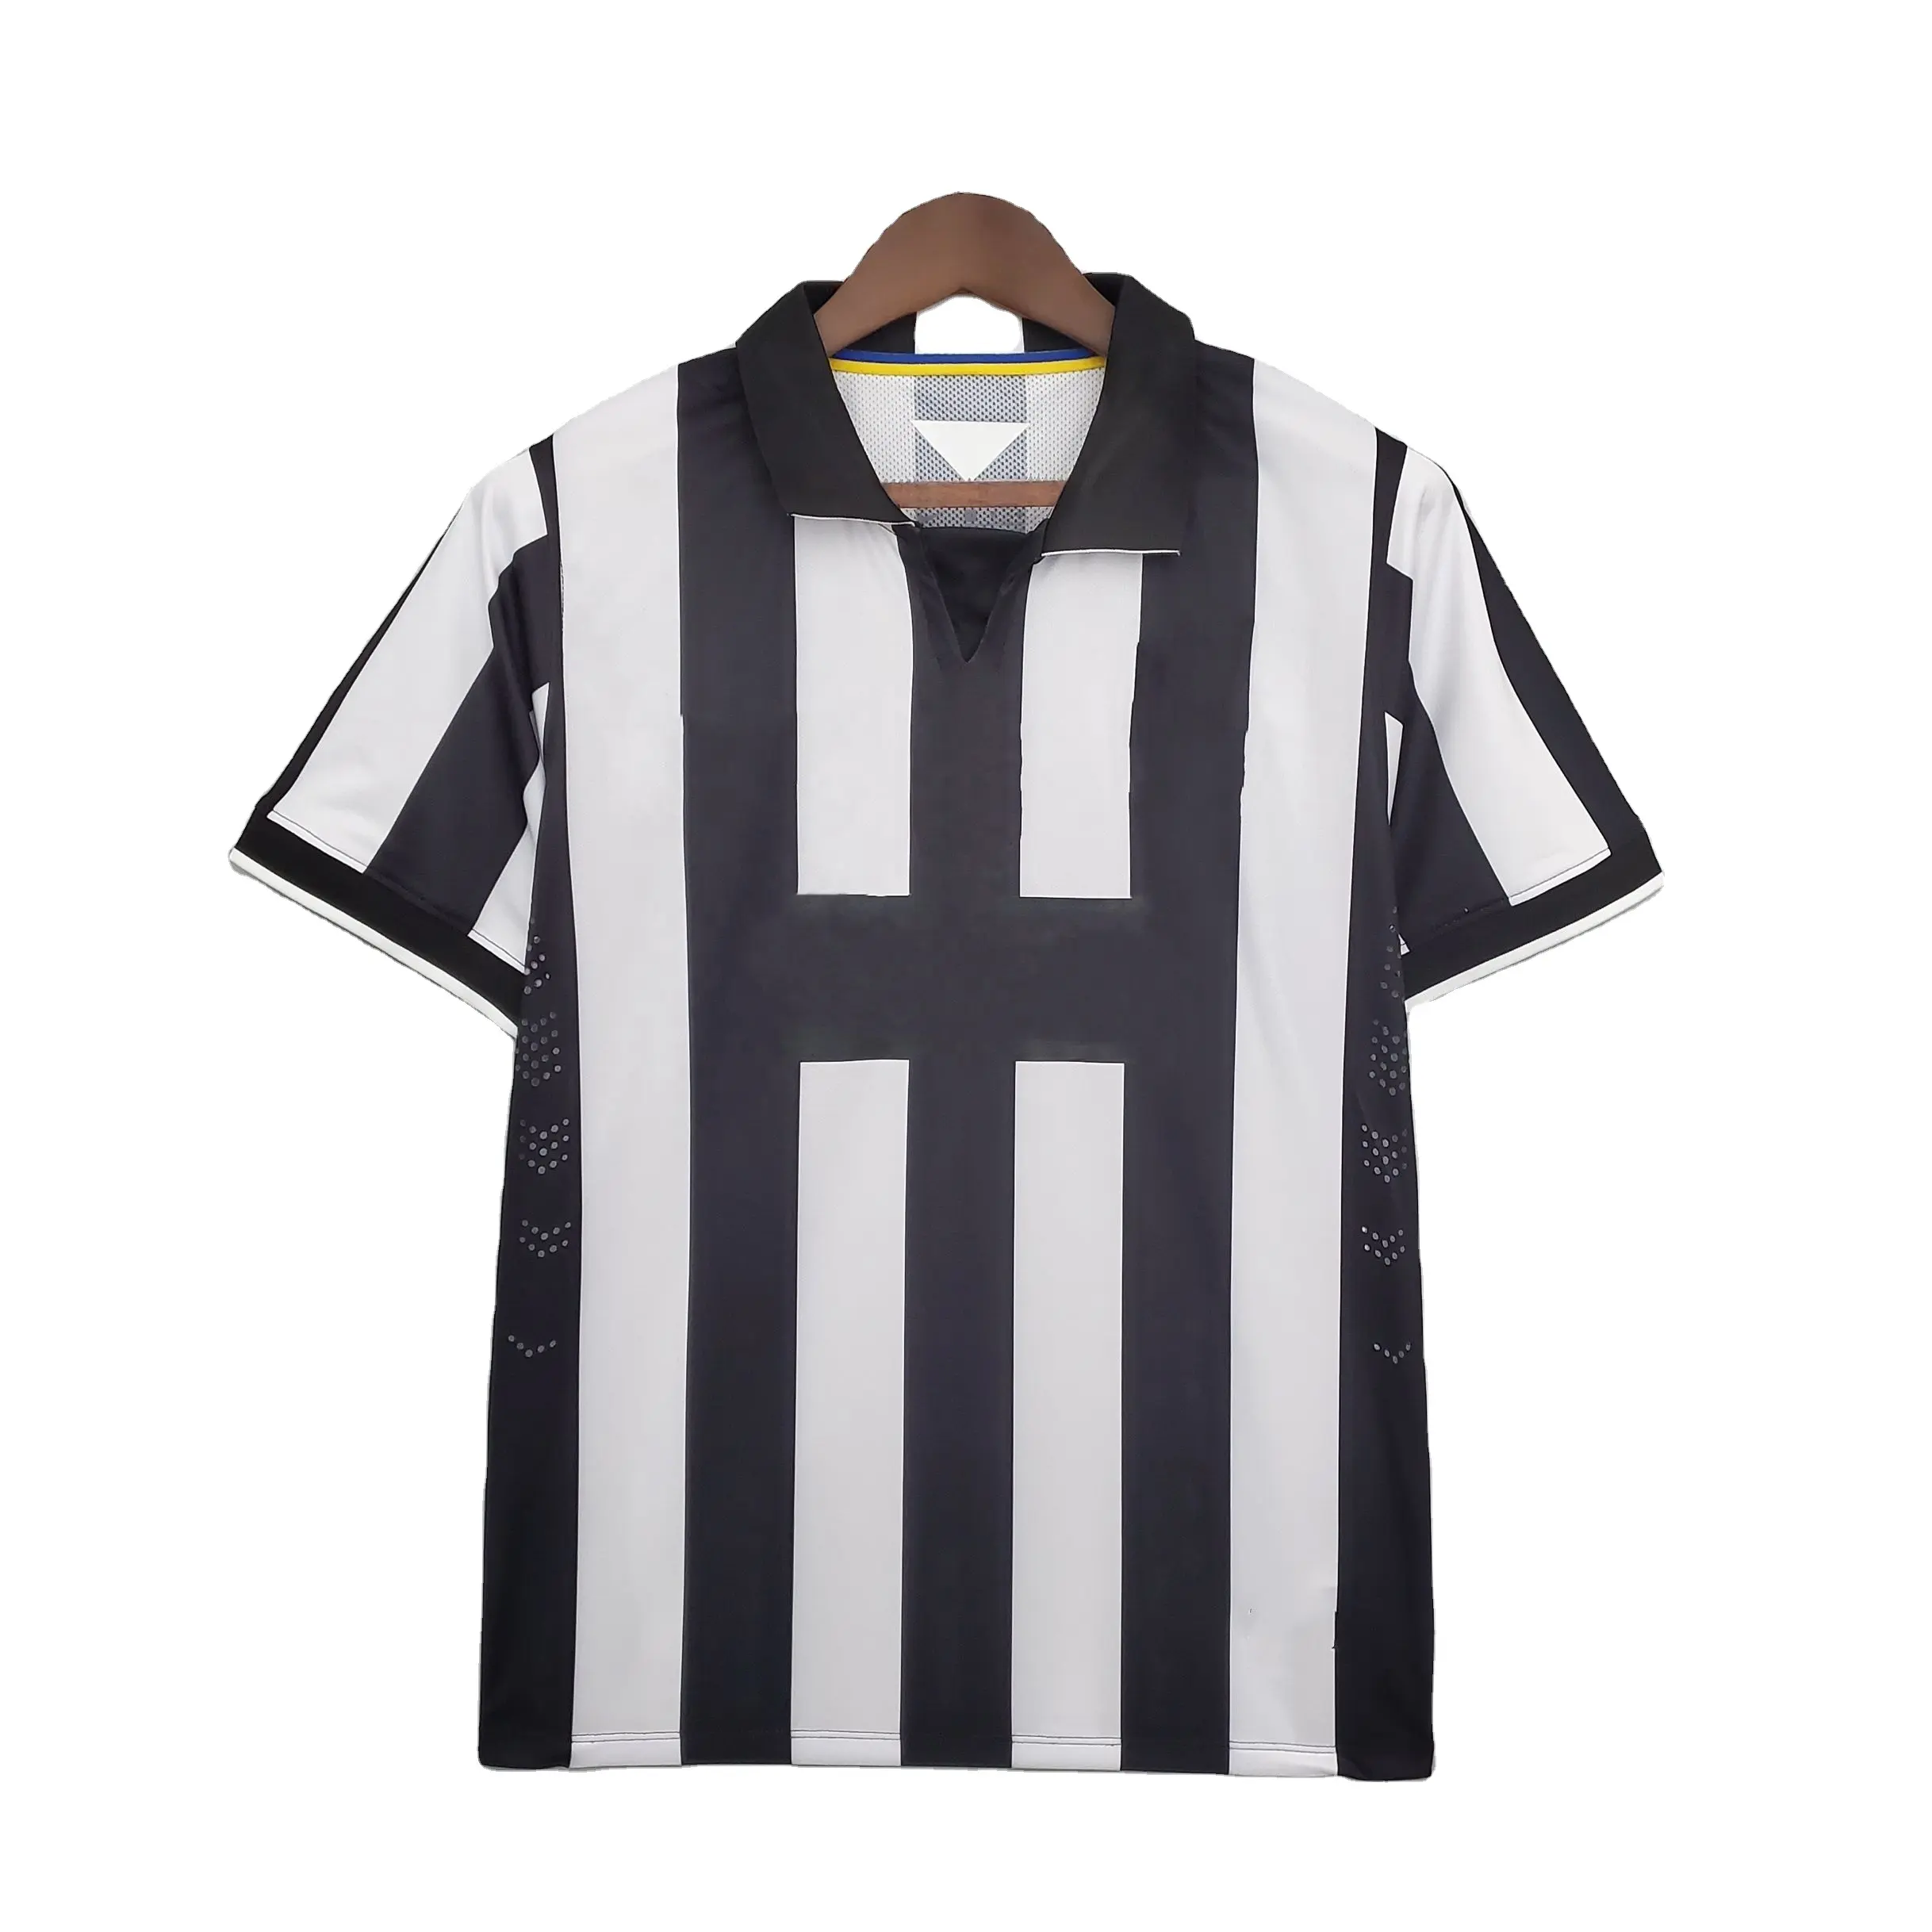 2014/2015 흑백 홈 오리지널 레트로 축구 저지 남자 플레이어 번호 7 태국 축구 셔츠